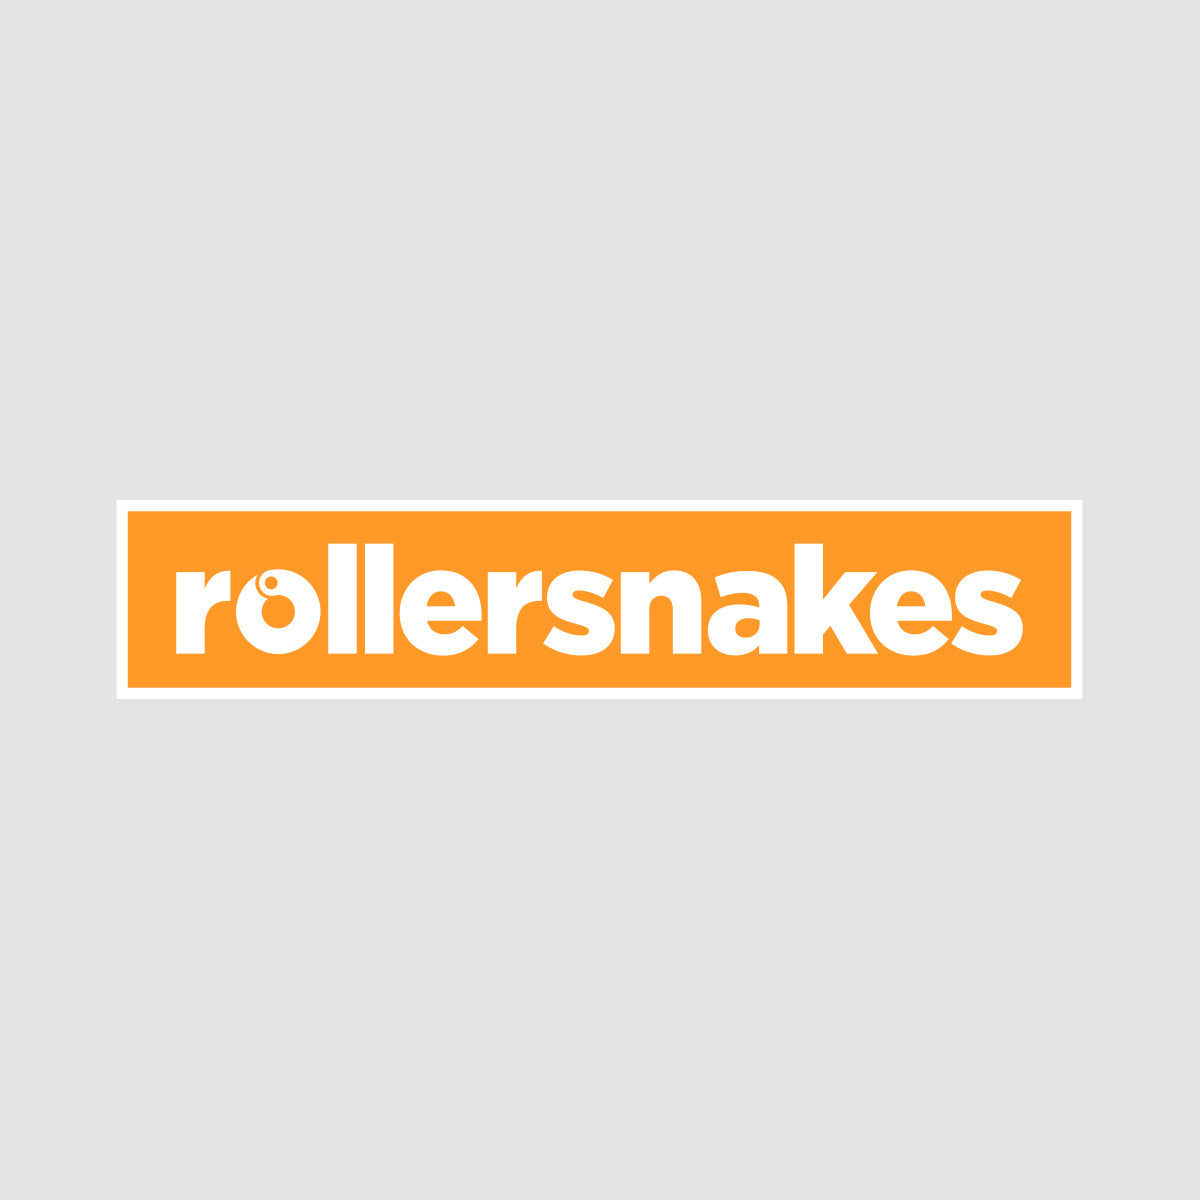 Rollersnakes WordMark Sticker Neon Orange 200x40mm